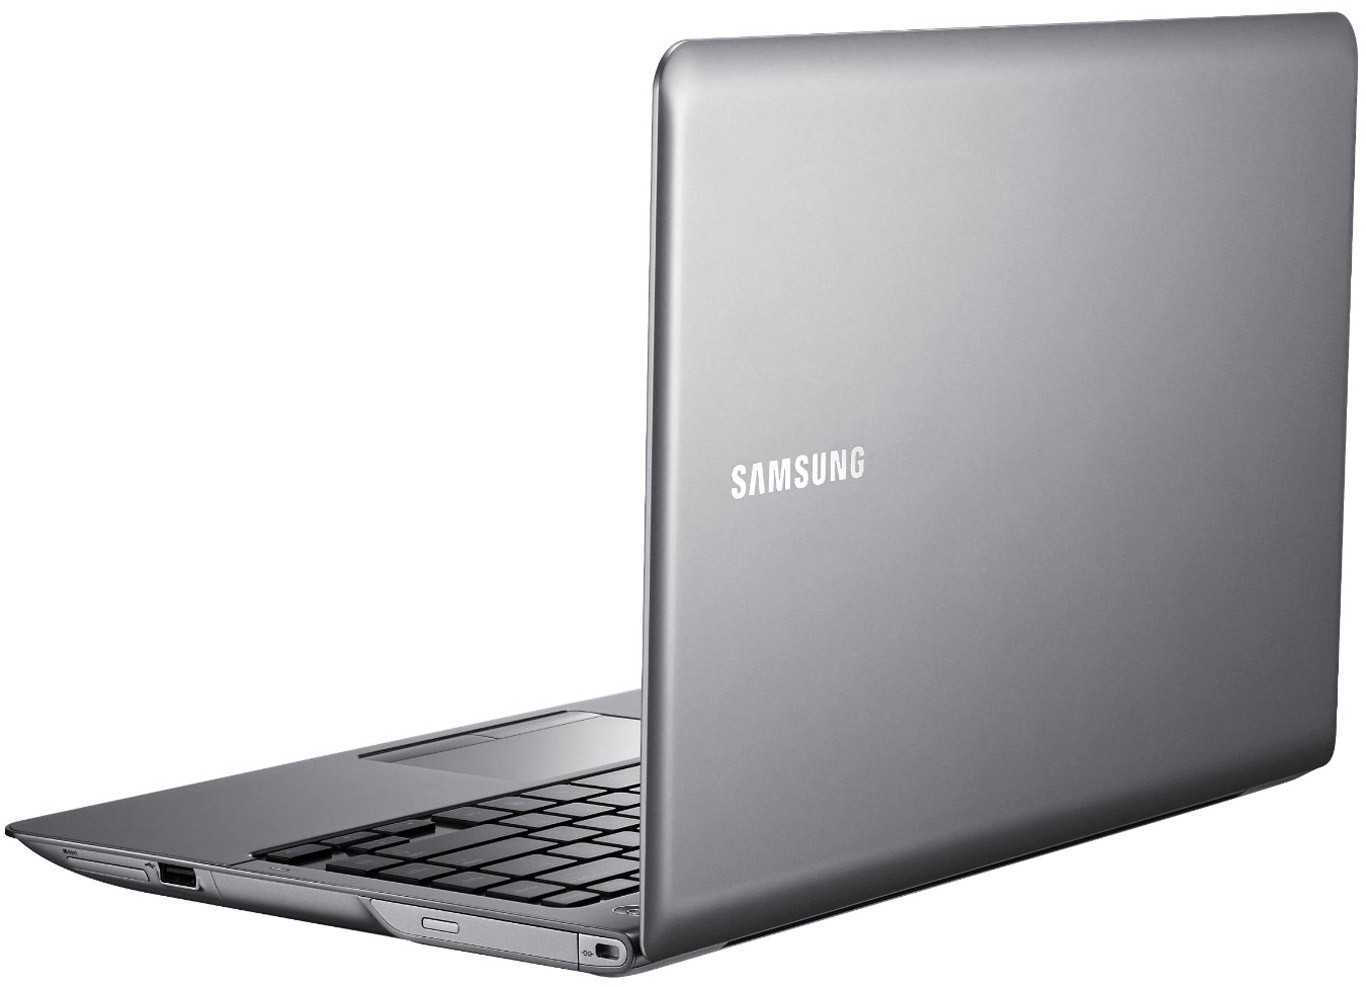 Ноутбук samsung 530u4c-s07 — купить, цена и характеристики, отзывы